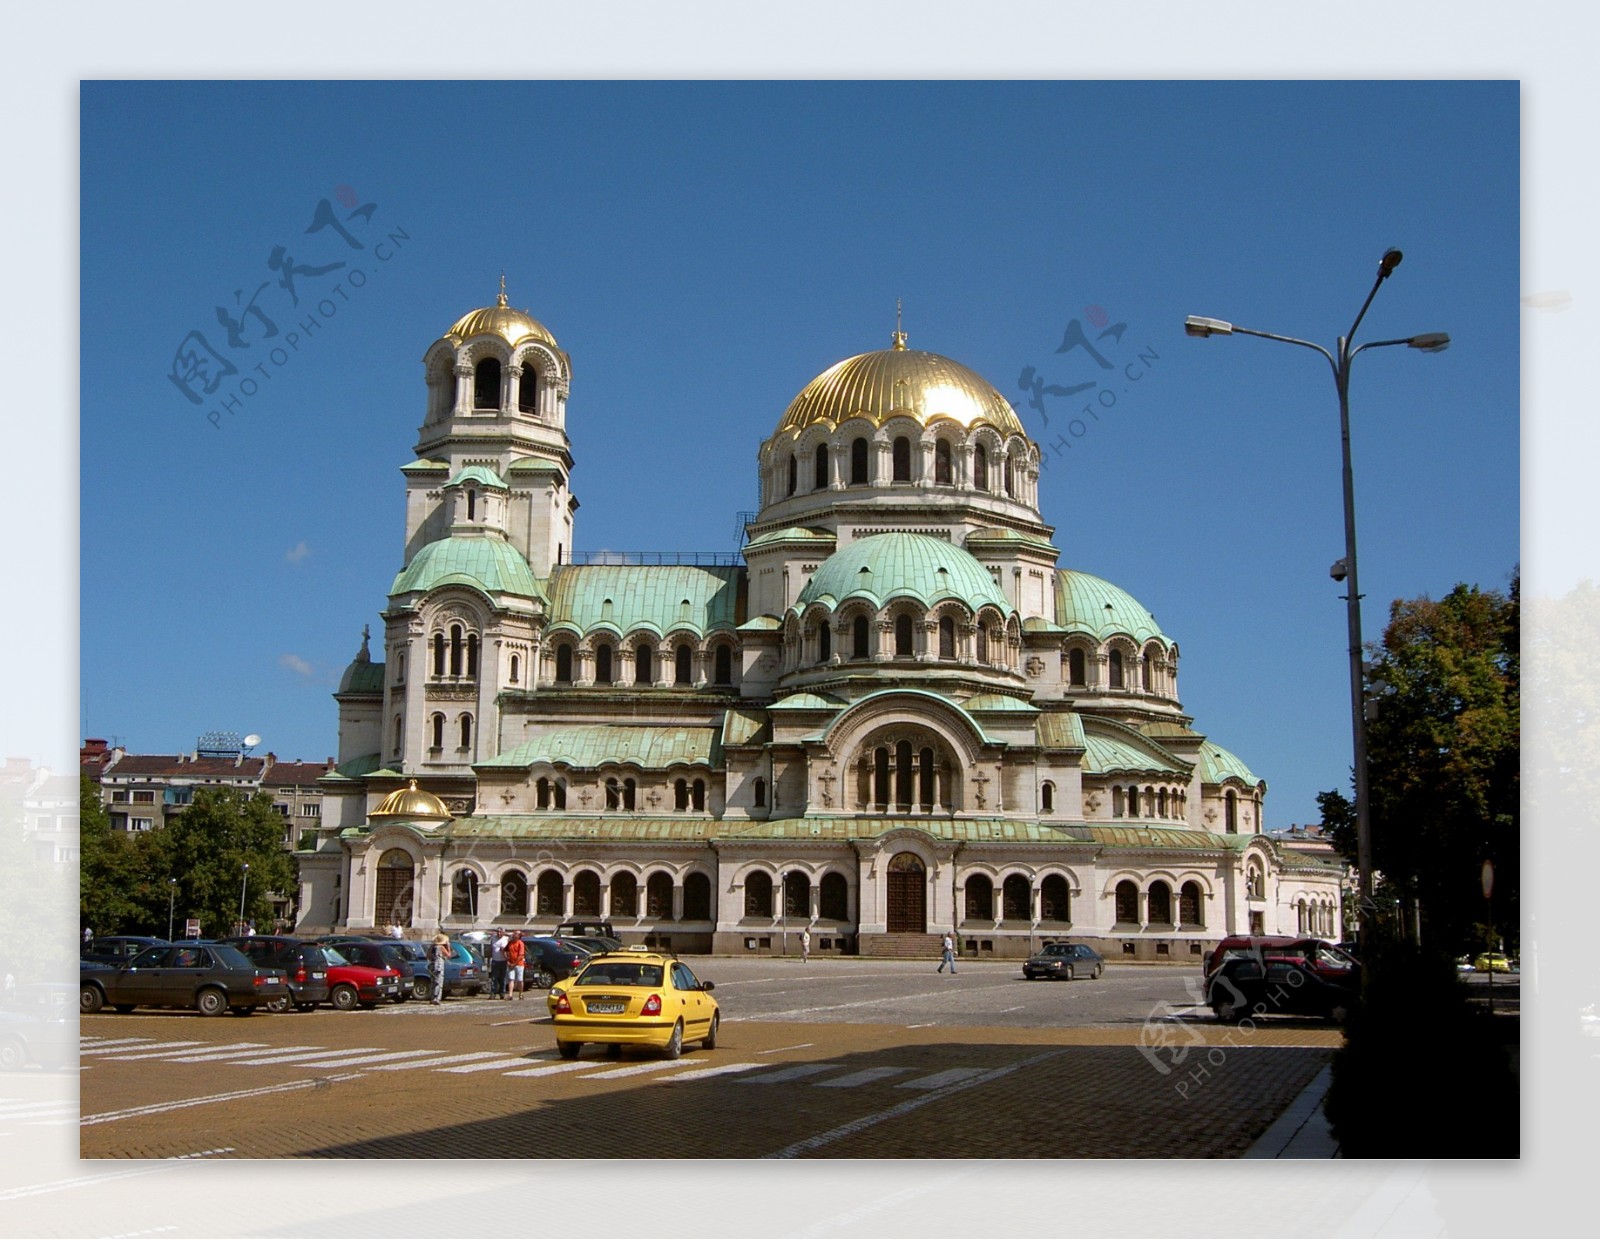 保加利亚索菲亚大教堂图片